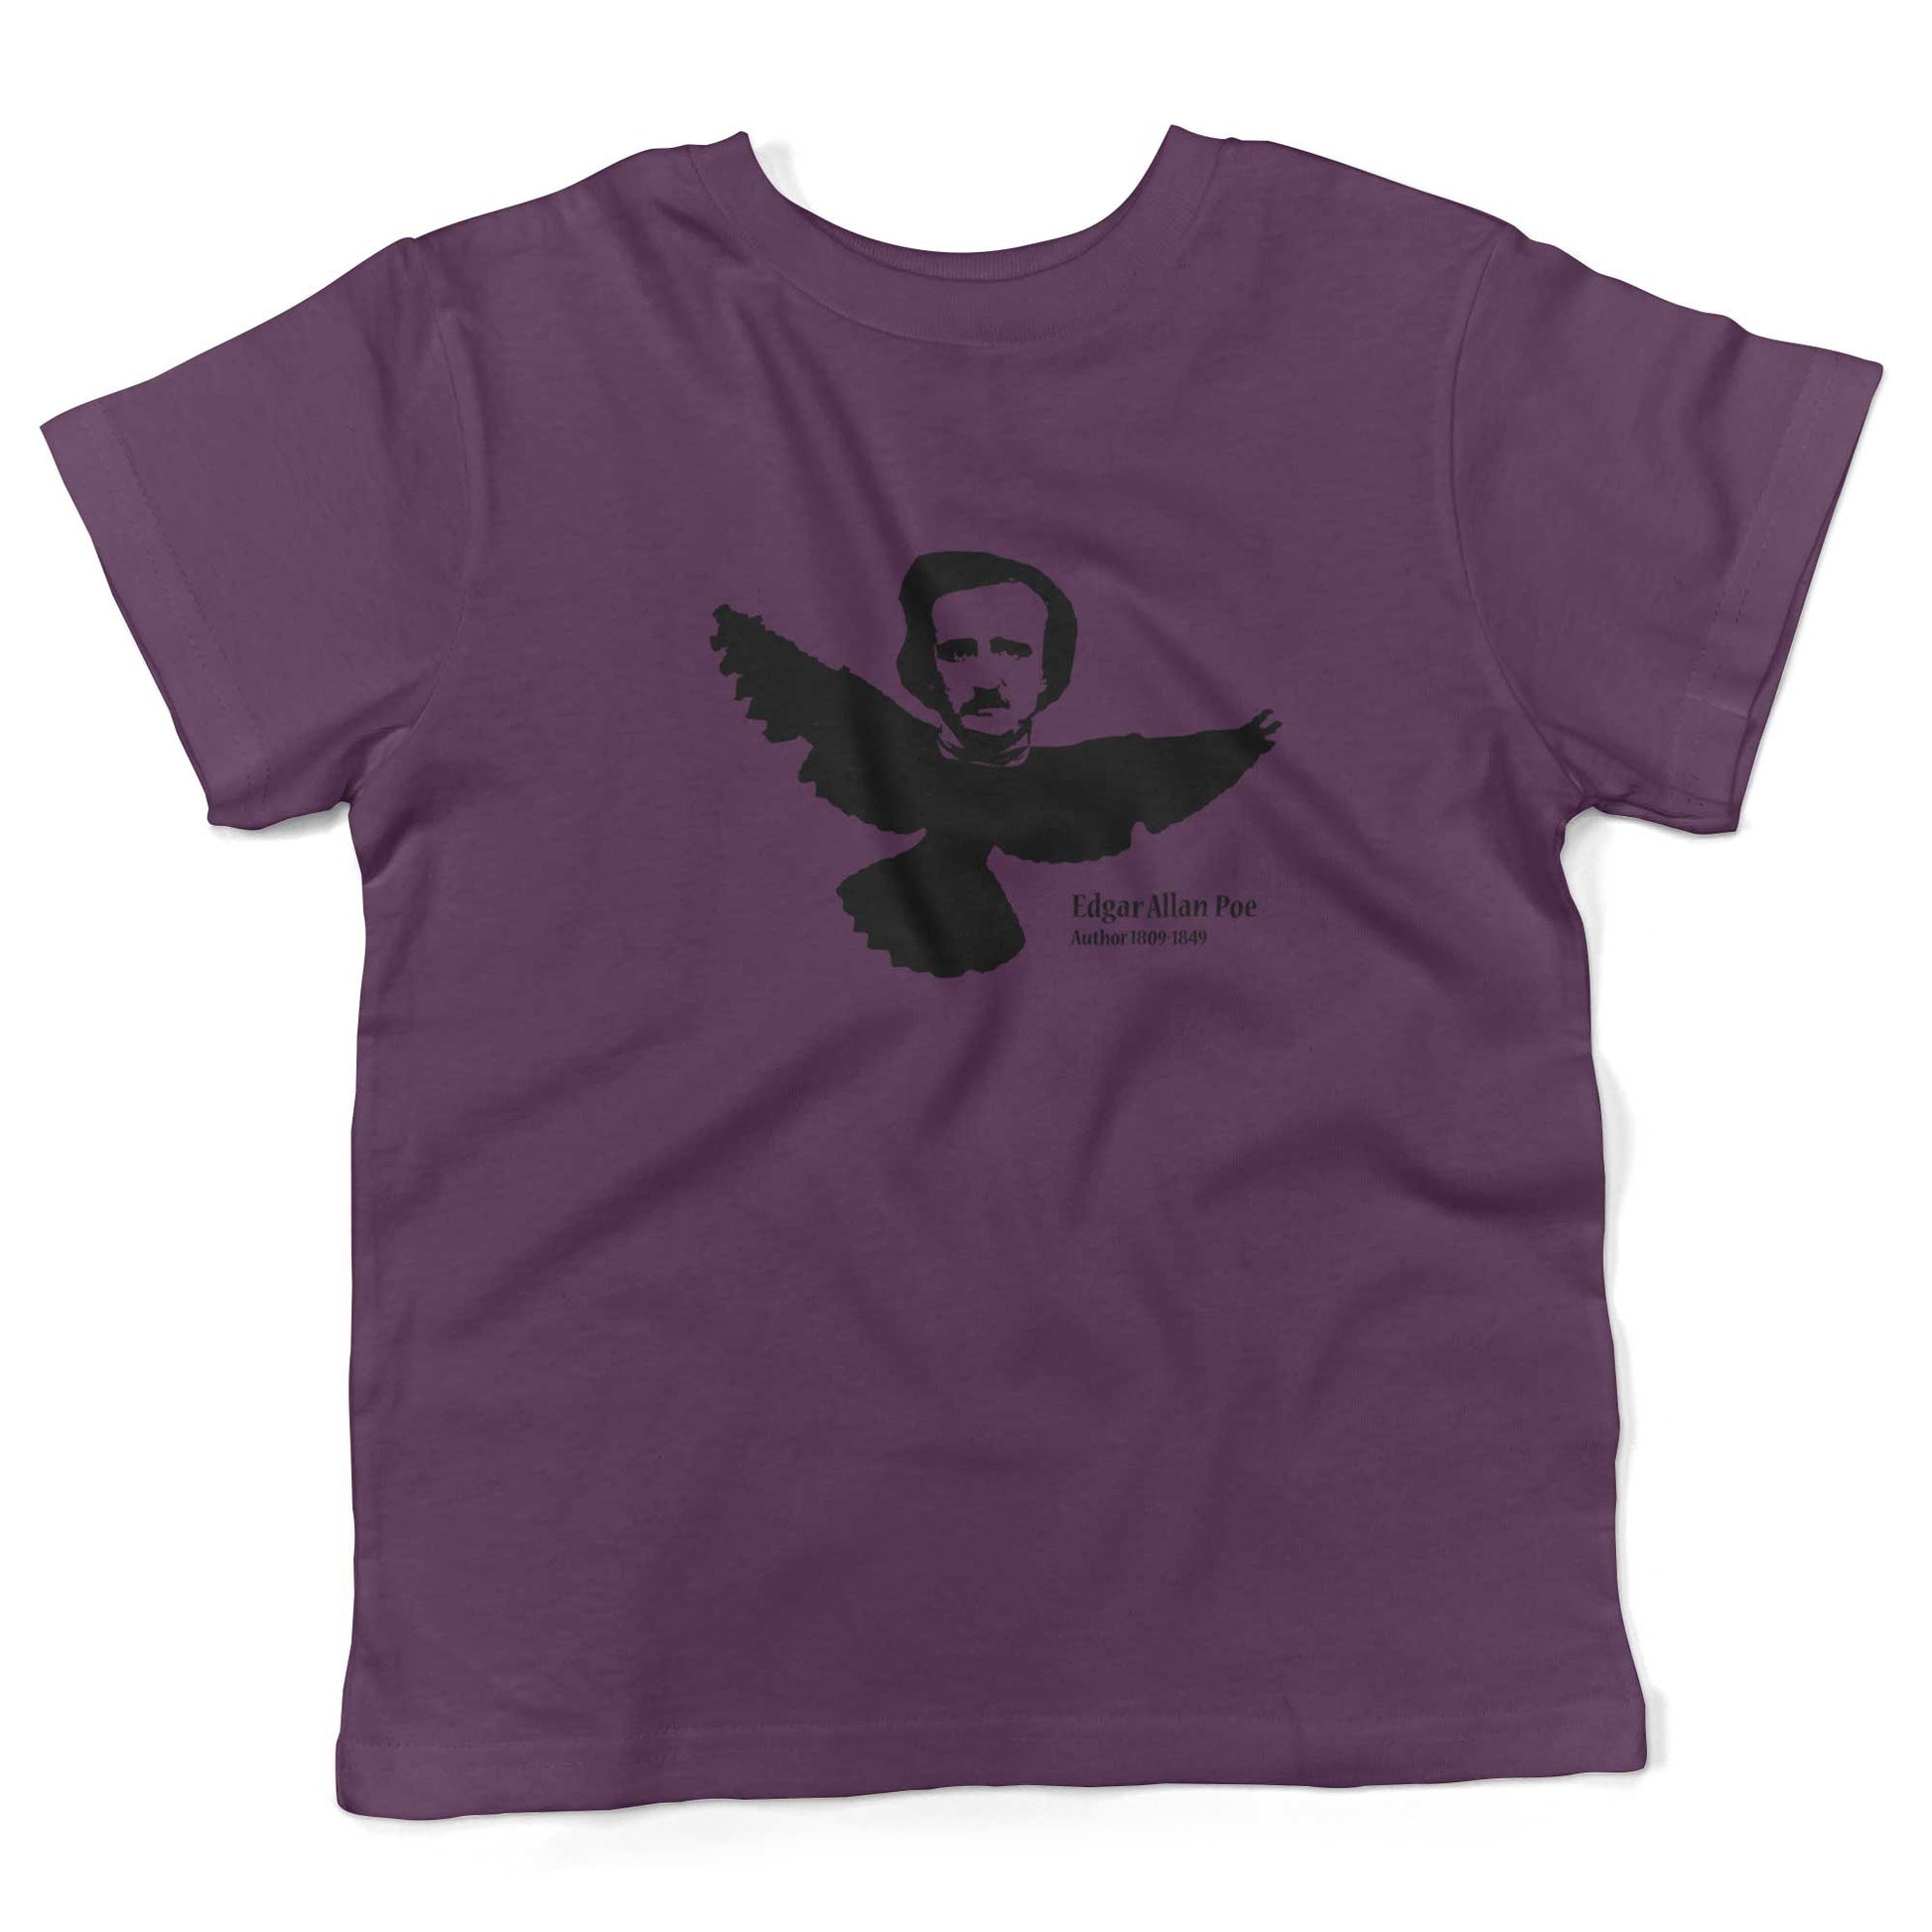 Edgar Allan Poe Toddler Shirt-Organic Purple-2T